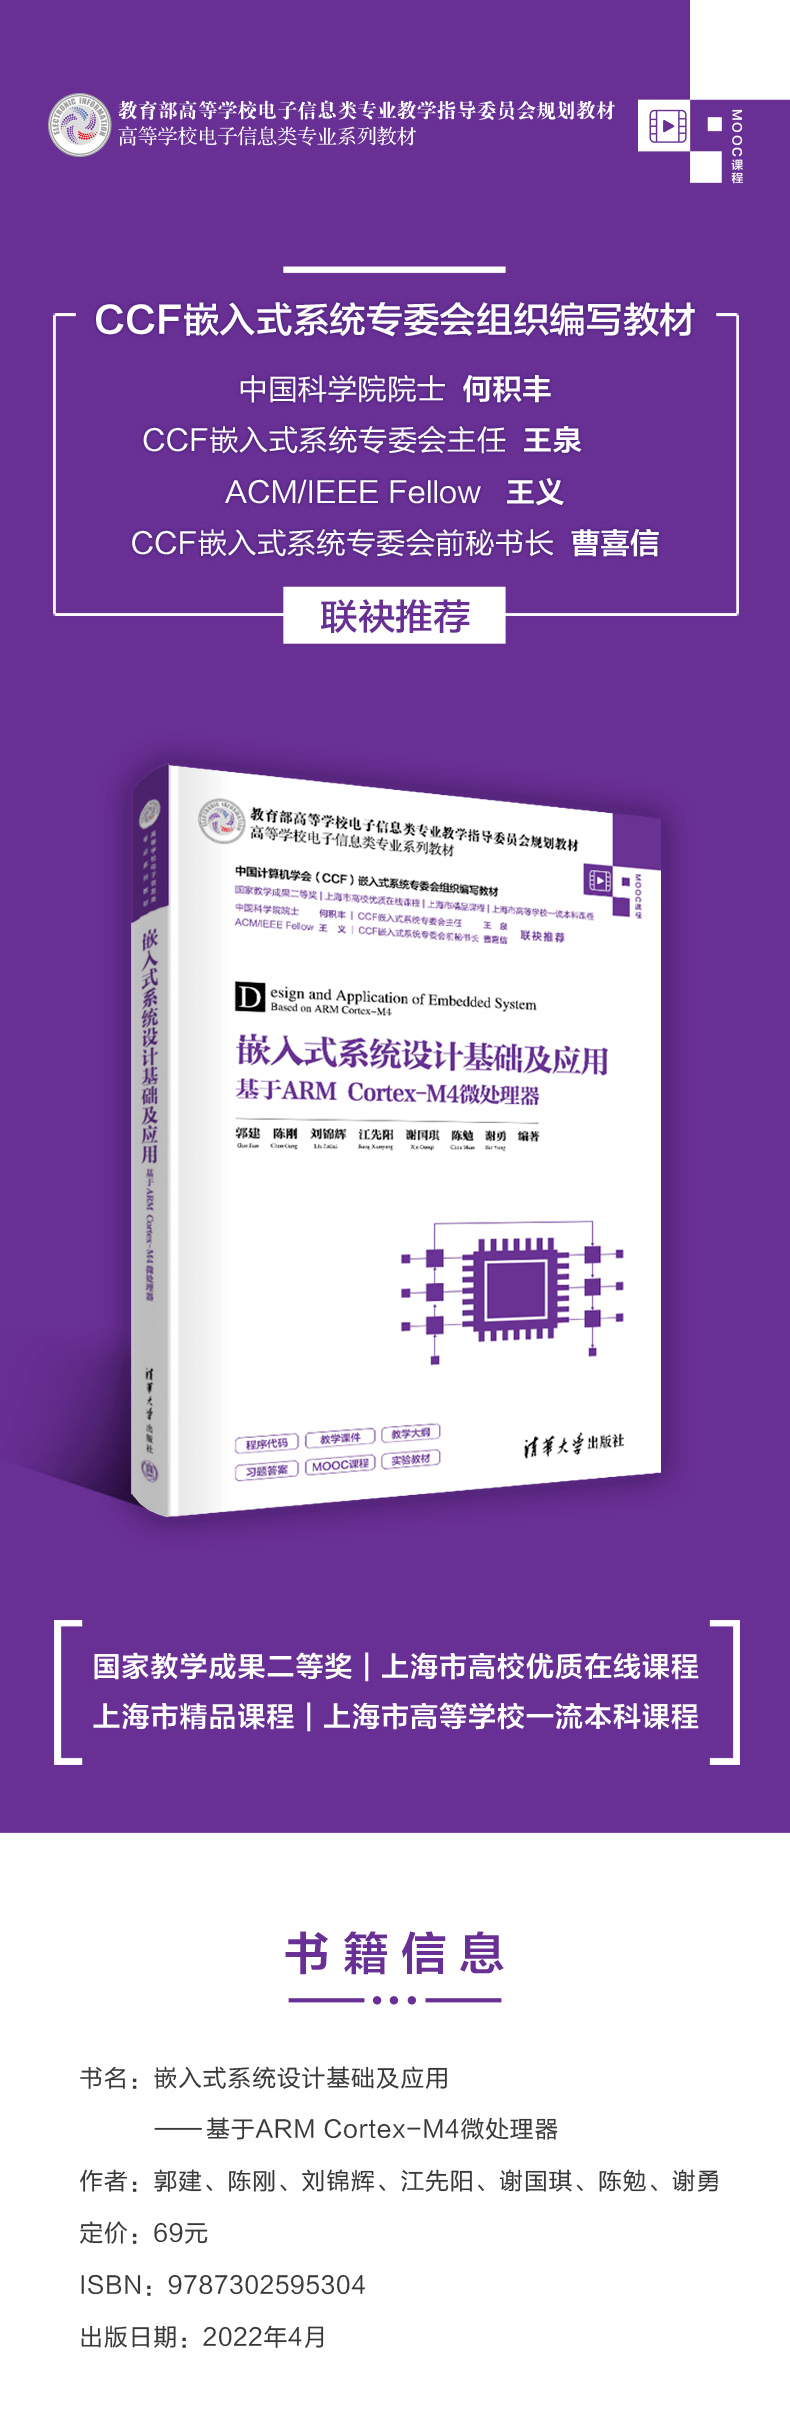 新书推荐 | 嵌入式系统设计基础及应用——基于ARM Cortex-M4微处理器